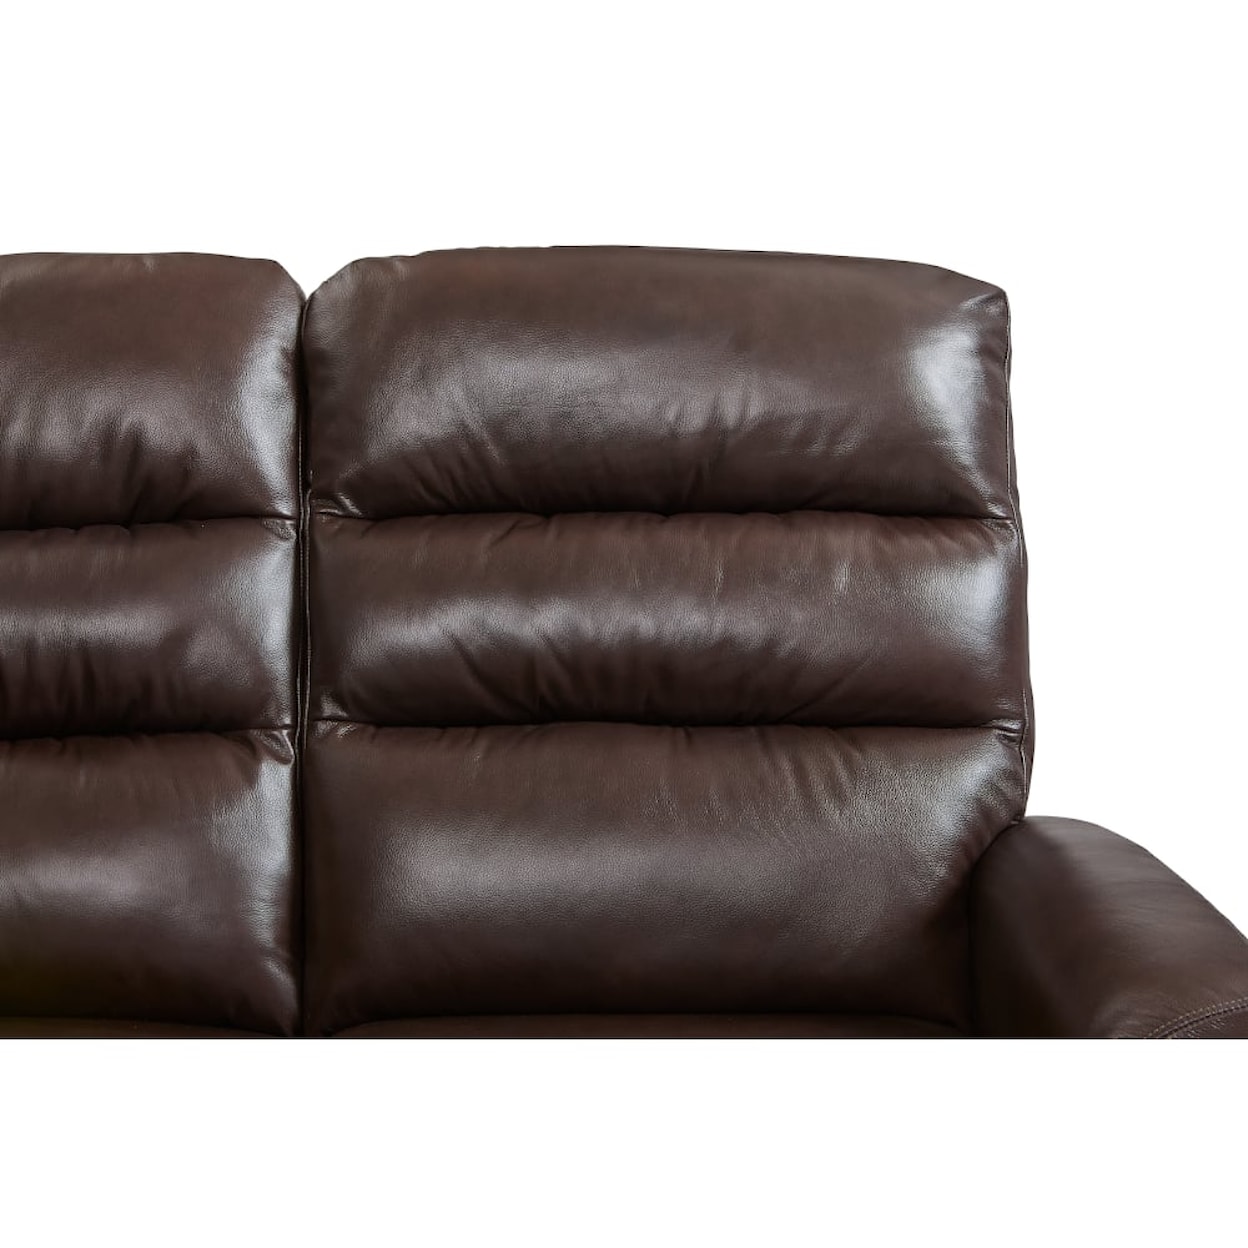 La-Z-Boy Liam Wall Reclining Sofa